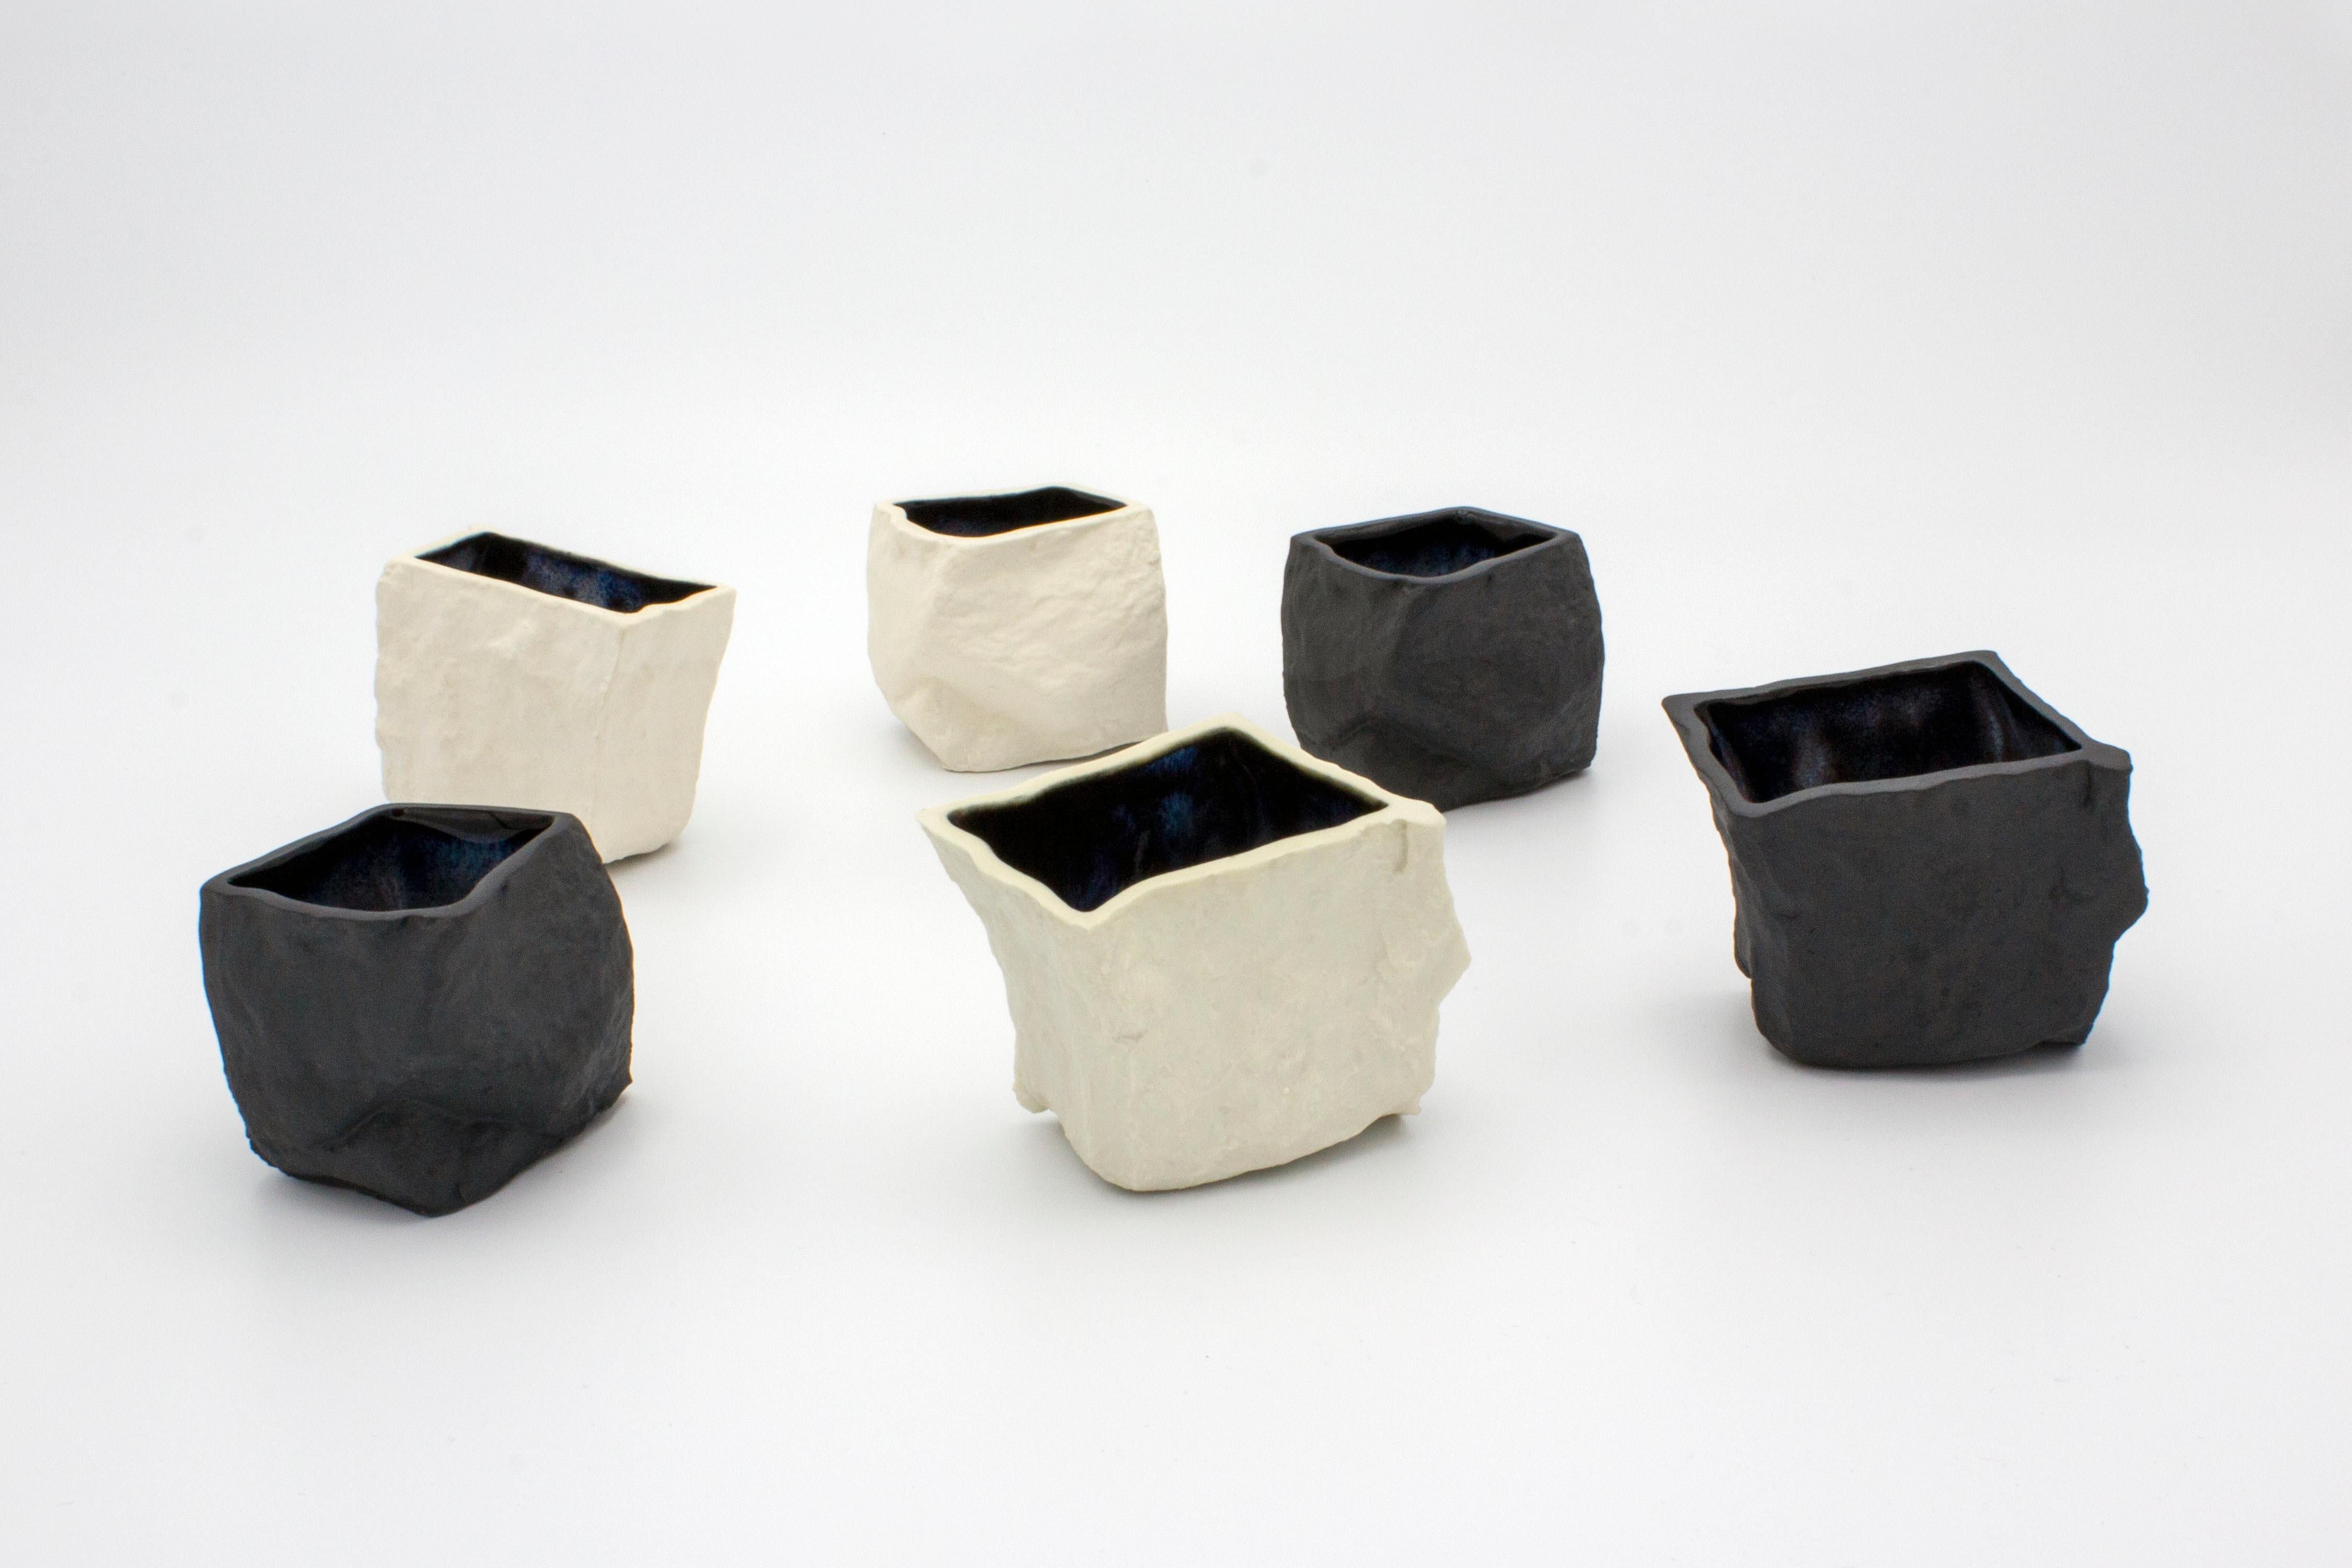 Schwarz-weiße Tassen 6er-Set von Craig Barrow
Abmessungen: 6 x 5 x 5,5cm
Ungefähres Volumen: 50ml

Variationen:
Schwarzes Porzellan, schwarze Glasur.
Schwarzes Porzellan, neblige Glasur.
Weißes Porzellan, weiße Glasur.
Weißes Porzellan,